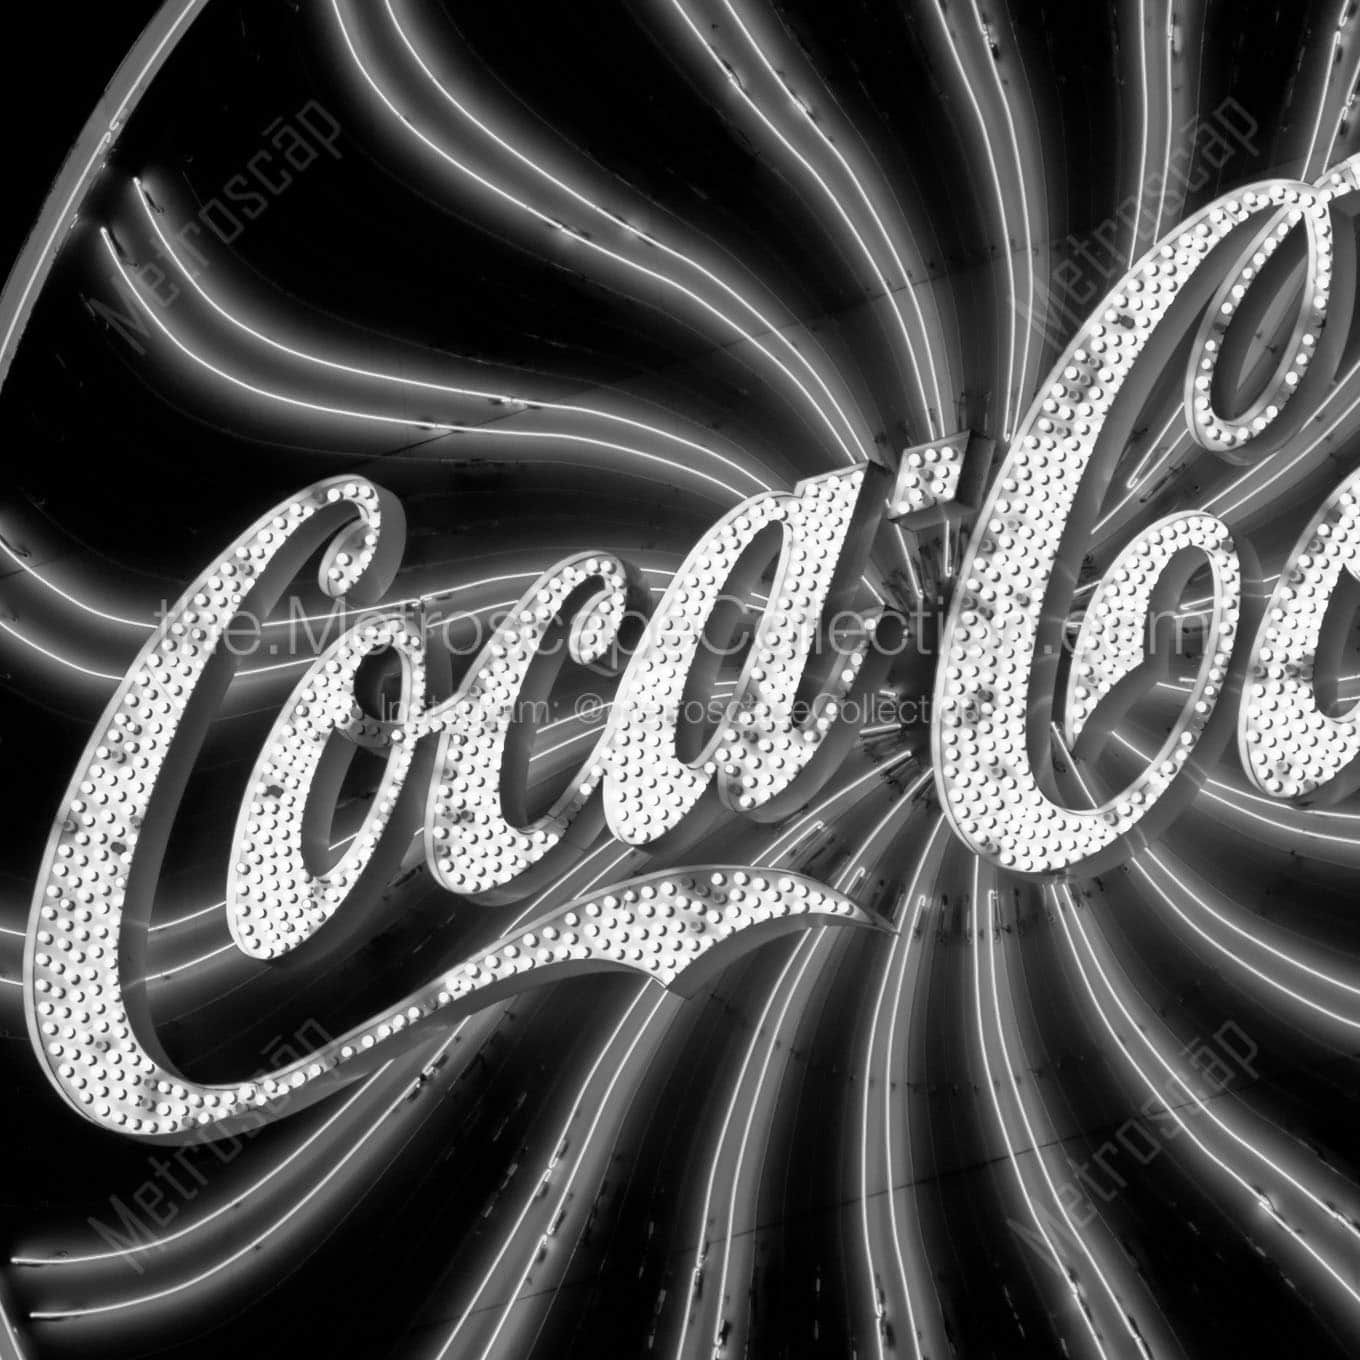 coca cola sign Black & White Wall Art